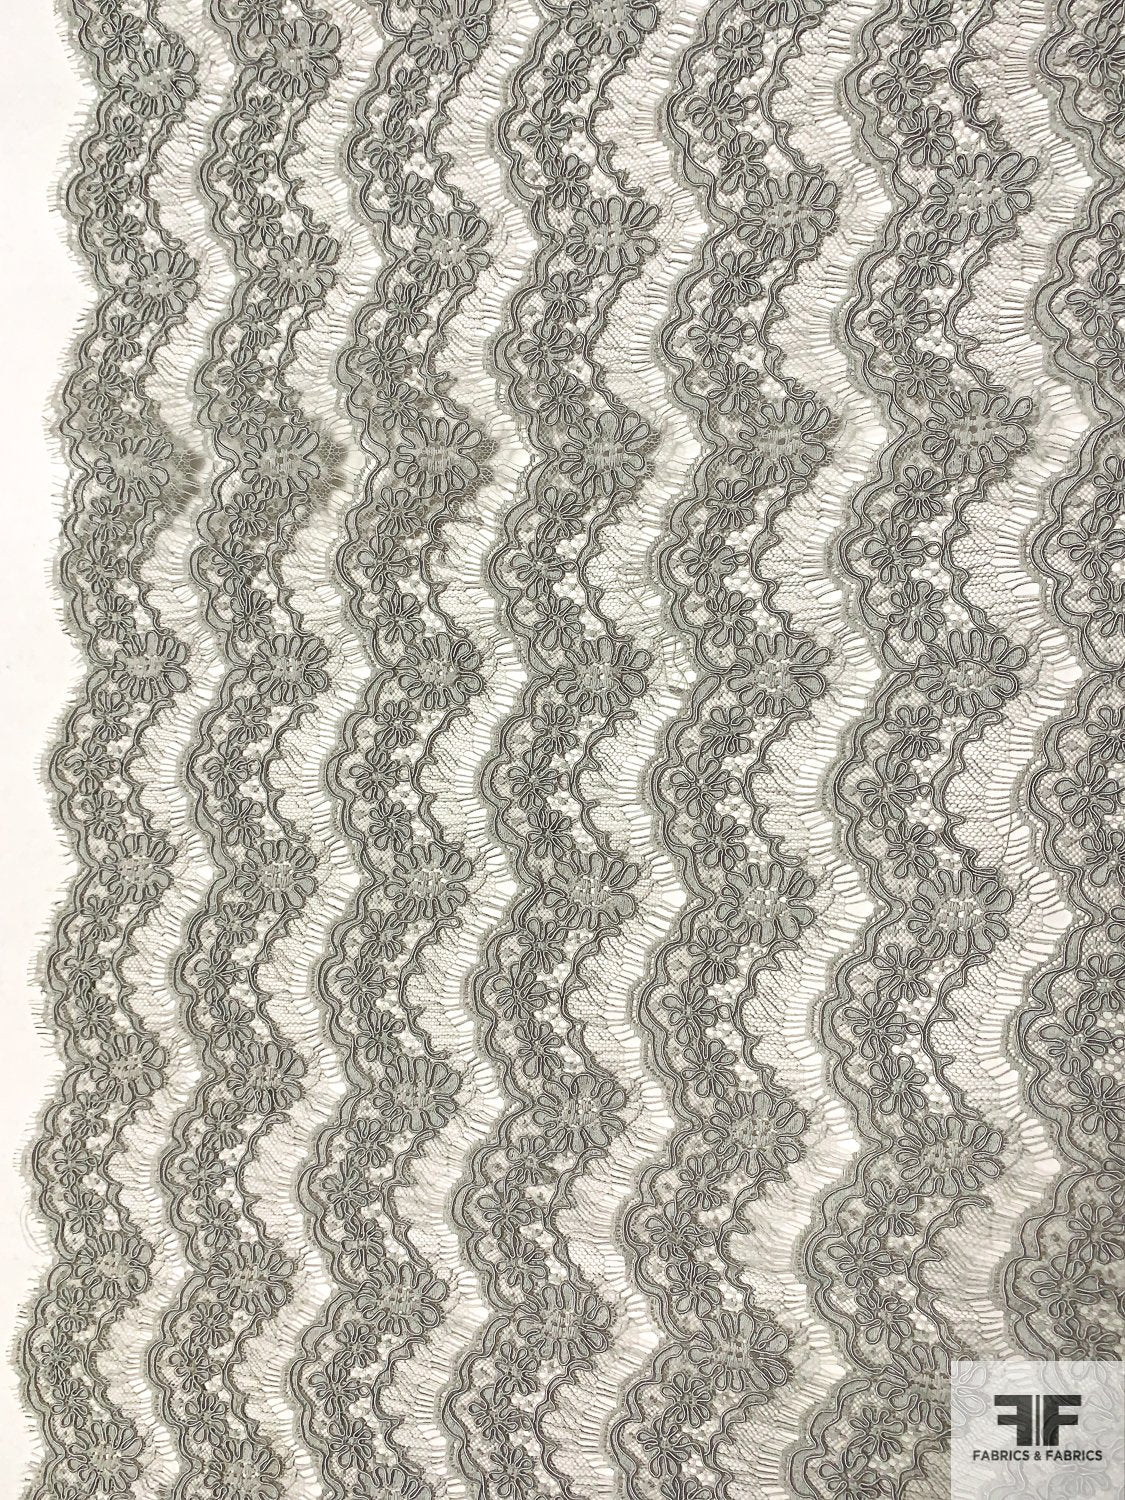 French Alençon Lace - Light Gray